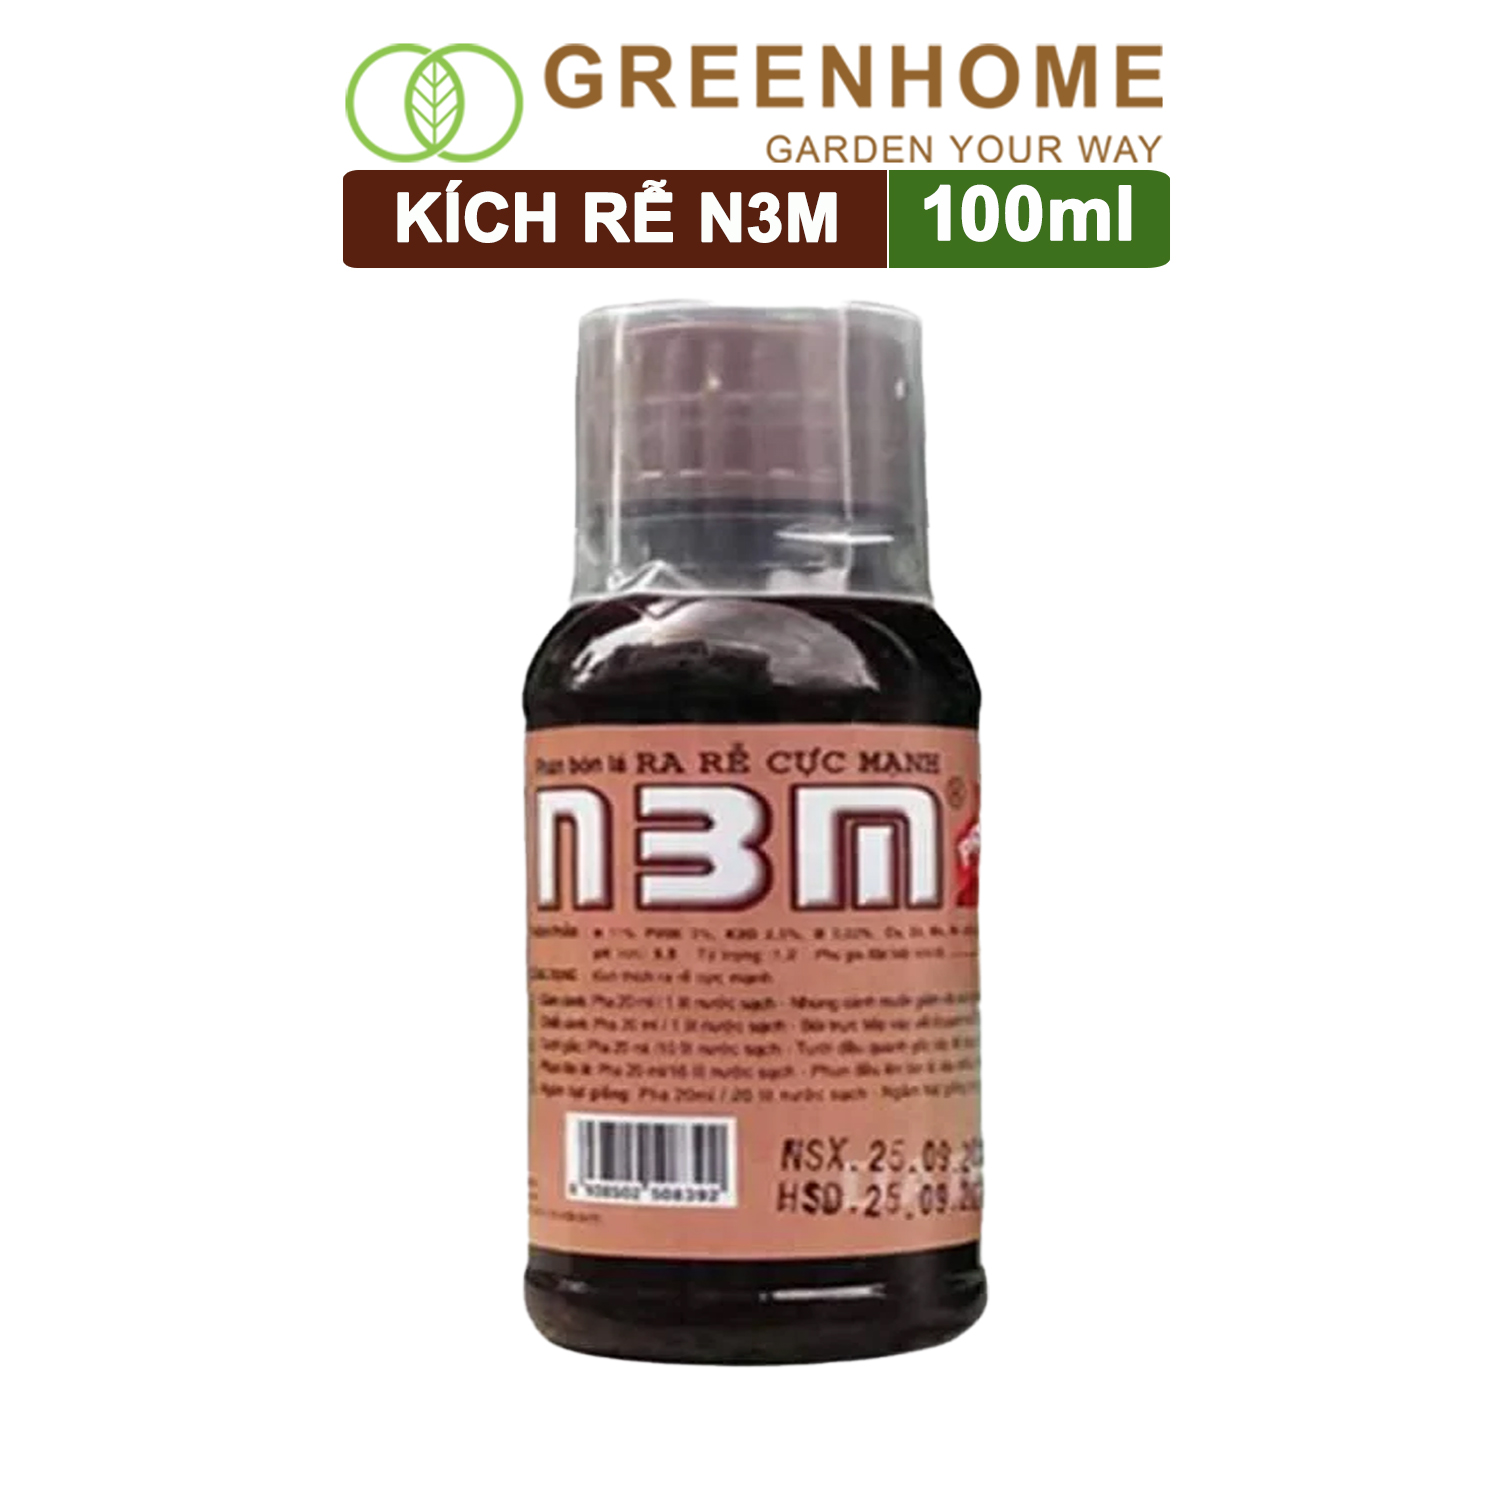 Chế phẩm kích rễ N3M, chai 100ml, siêu ra rễ, giâm, chiết cành, ngâm hạt giống |Greenhome